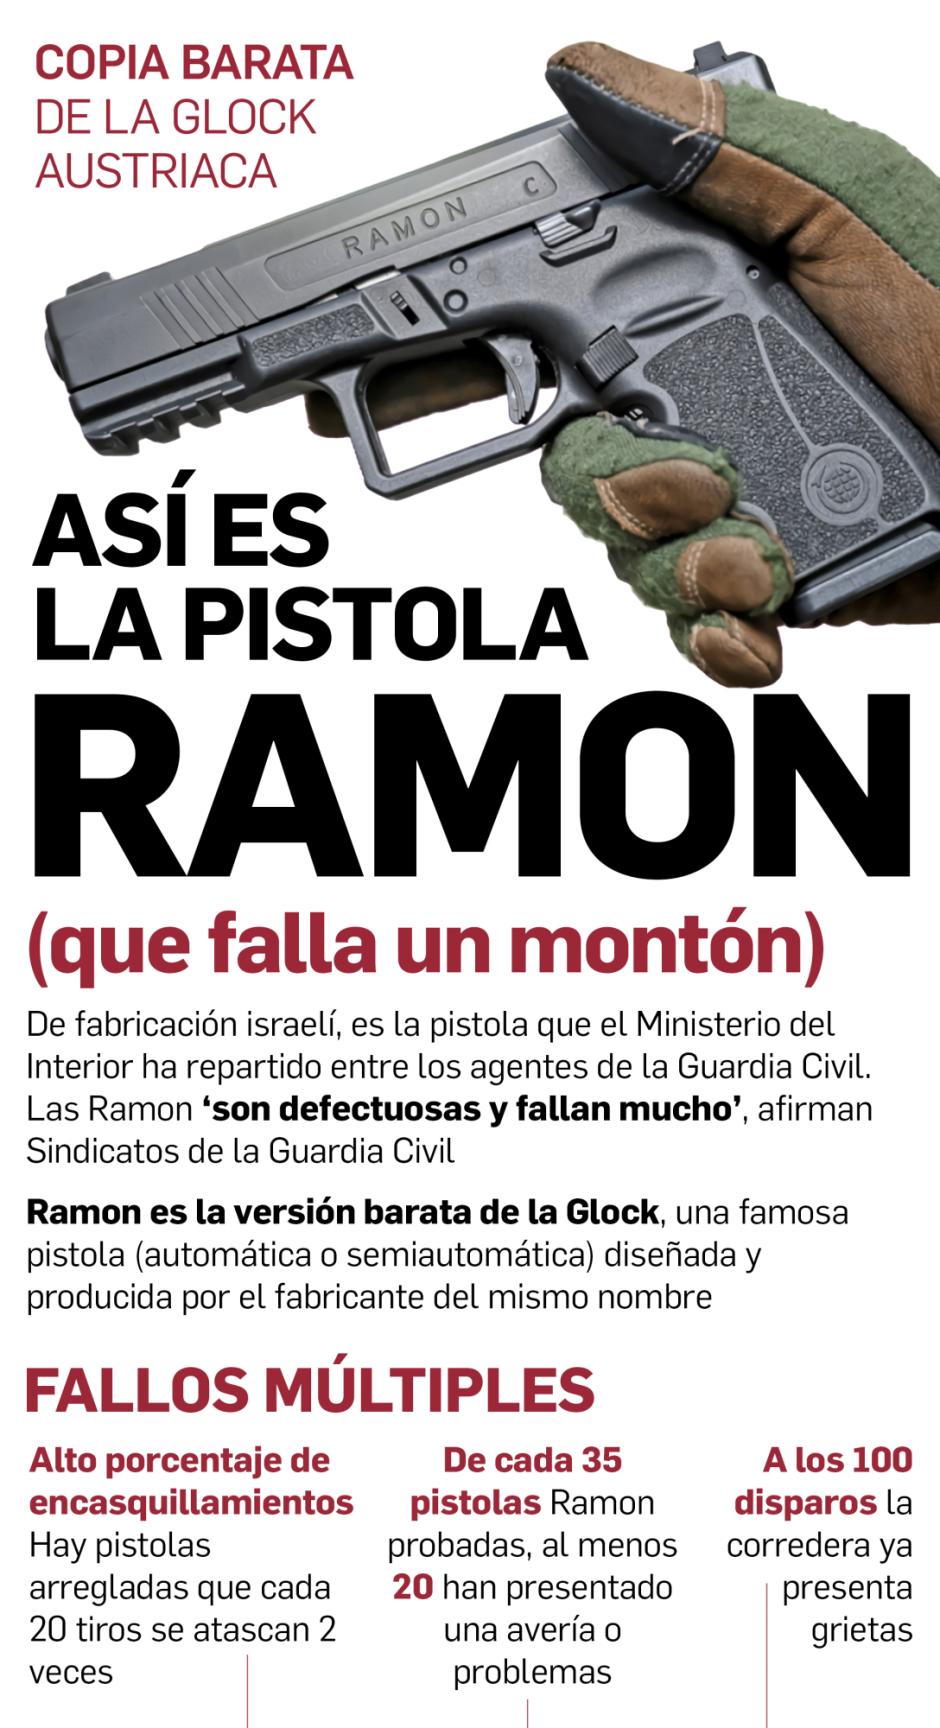 Los fallos de las pistolas Ramon han provocado que sean devueltas al fabricante